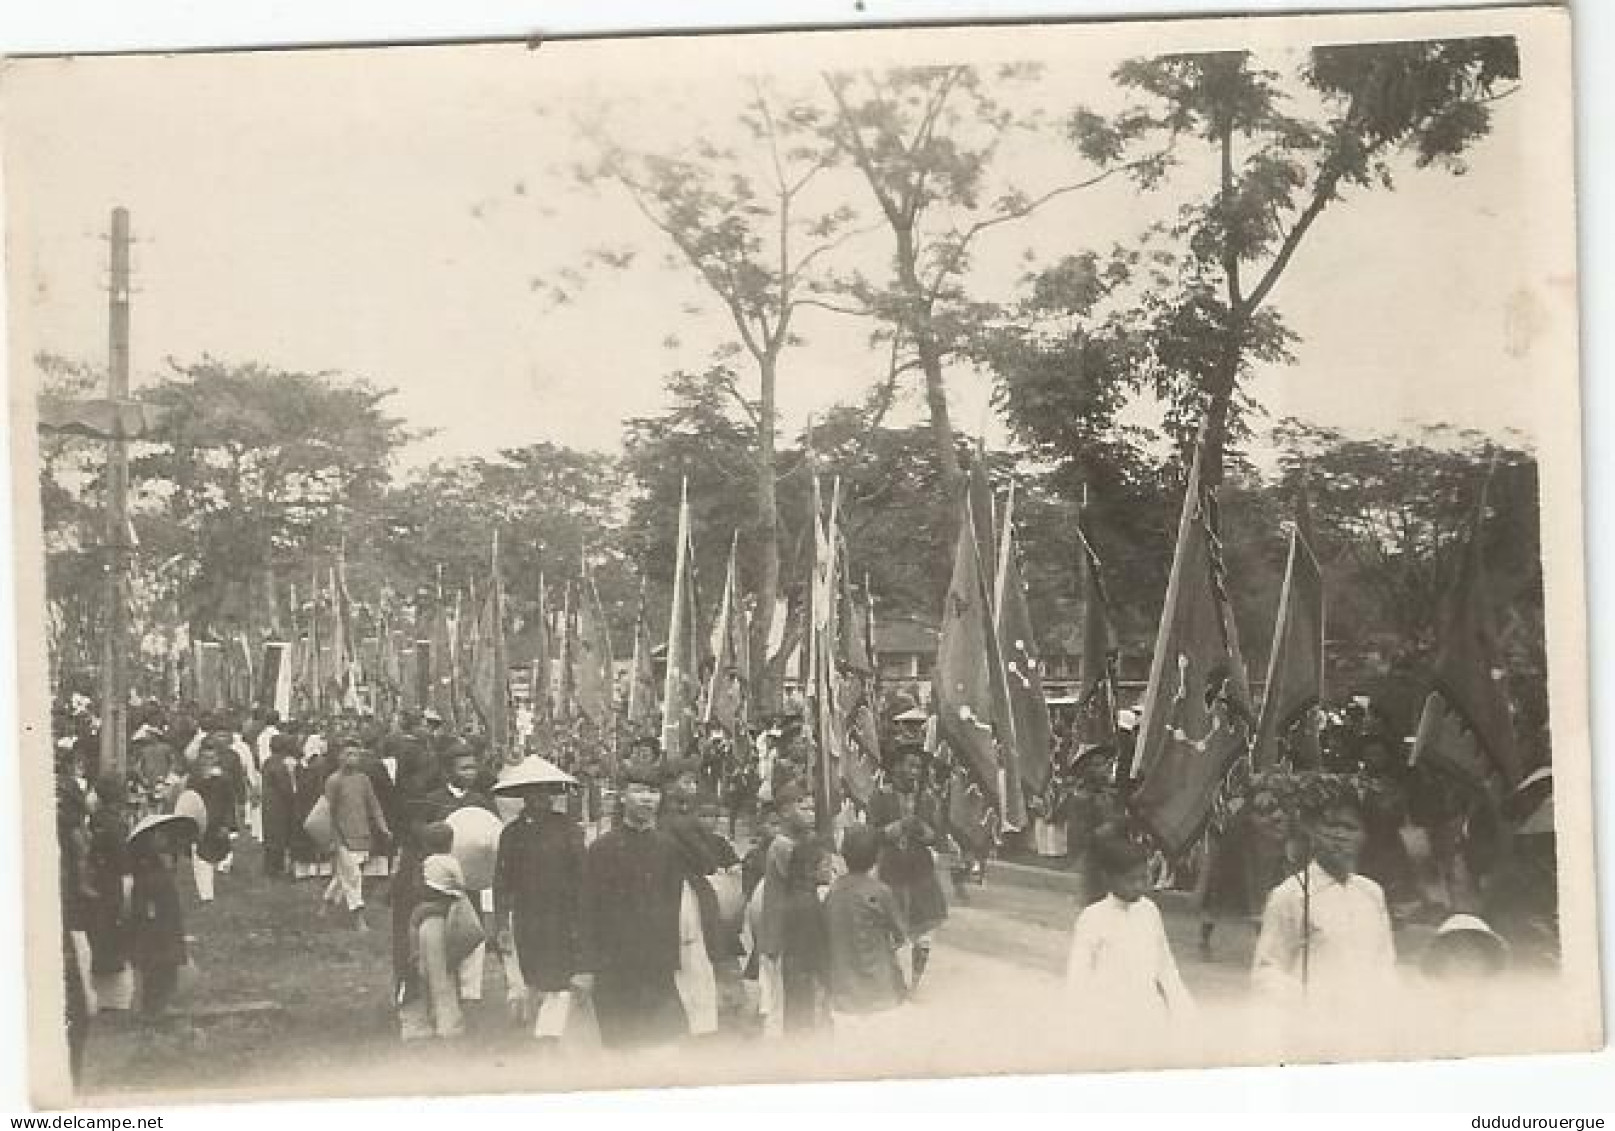 VIETNAM , INDOCHINE , HUE LE 15 MARS 1933 : LES PORTEURS DE DRAPEAUX EN DEBUT DE CORTEGE - Asie